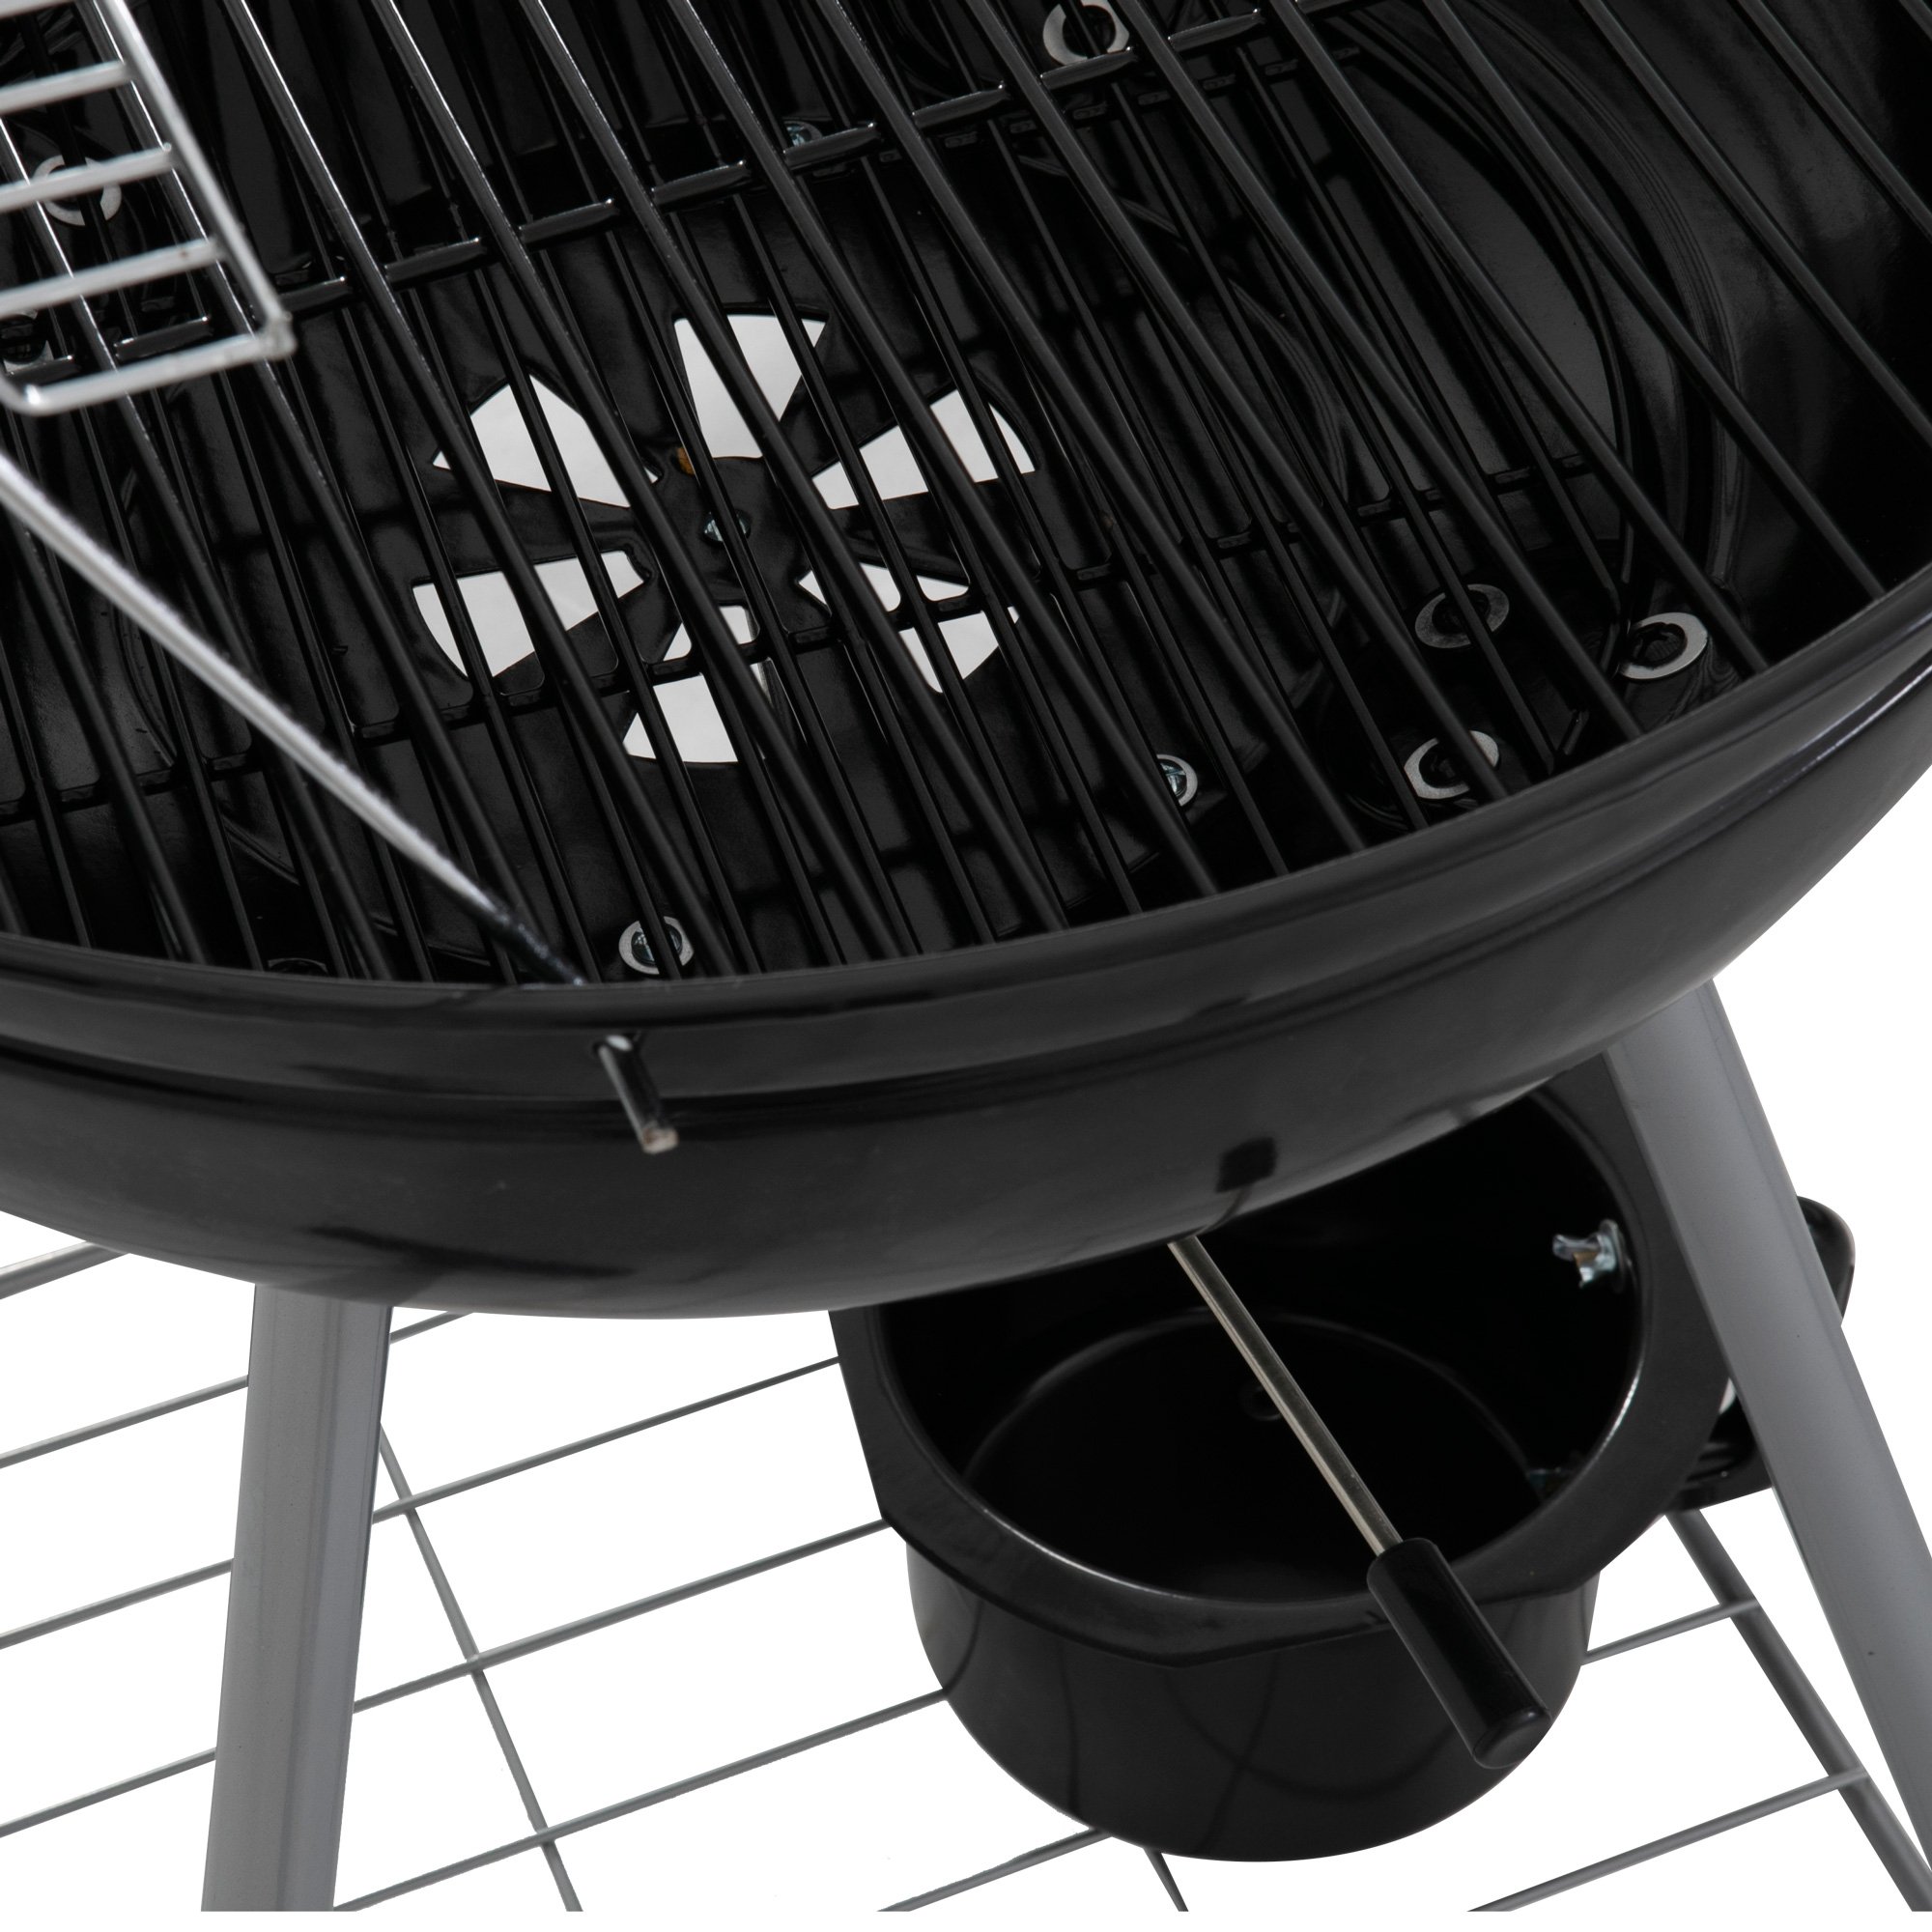 DREAMO Portable Charcoal Roaster Details Show